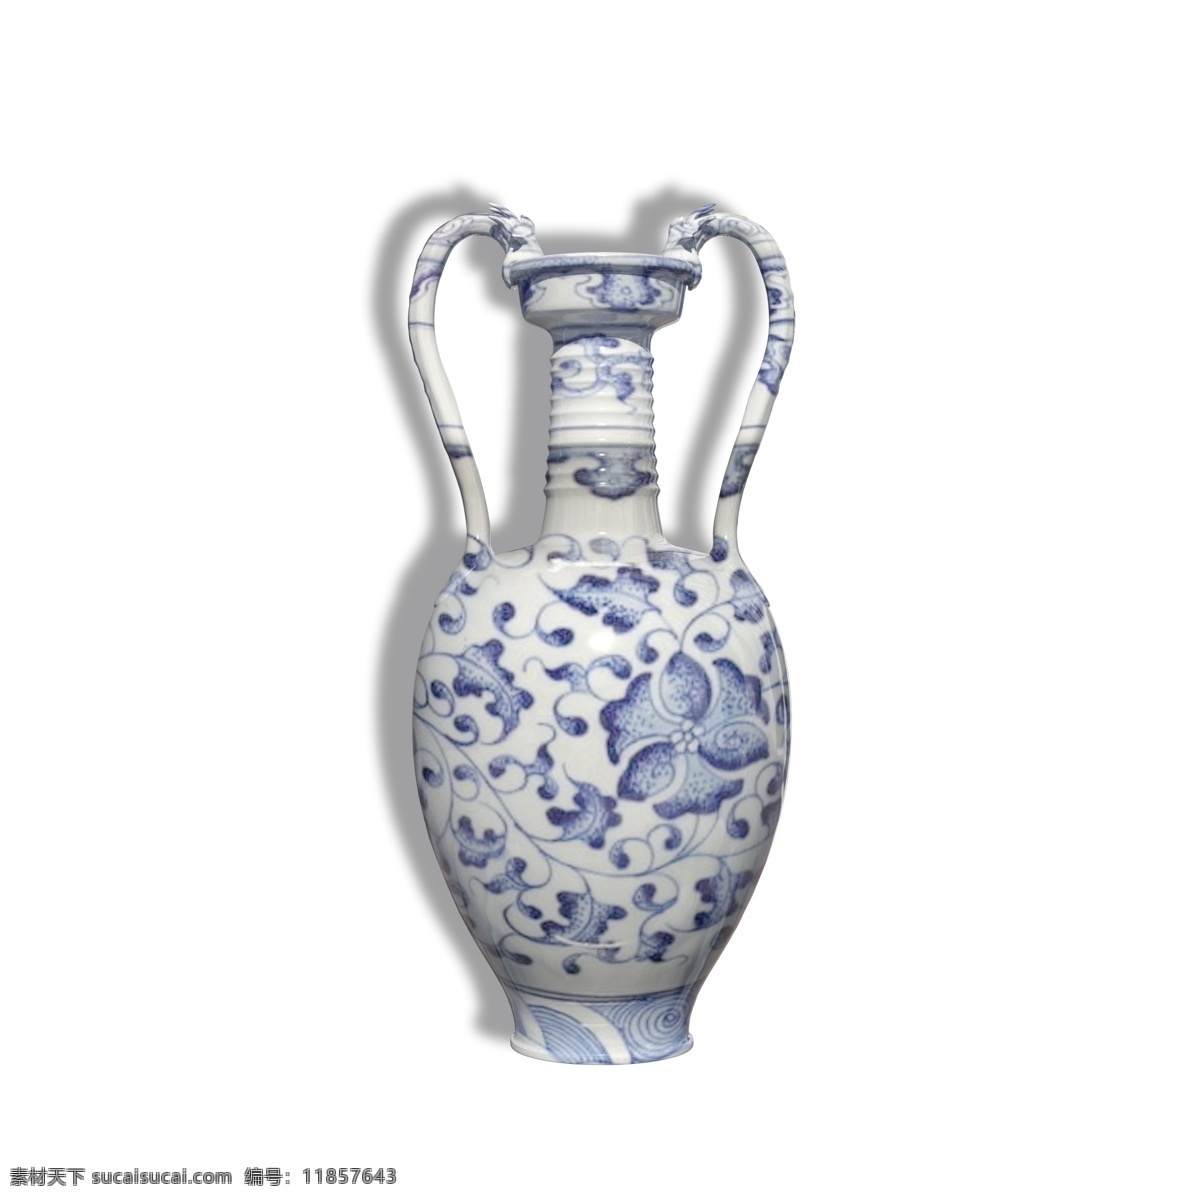 古董 花瓶 青花 瓷器 古董花瓶 青花瓷器 古代花瓶 瓶子 中国古代花瓶 中国艺术 艺术品